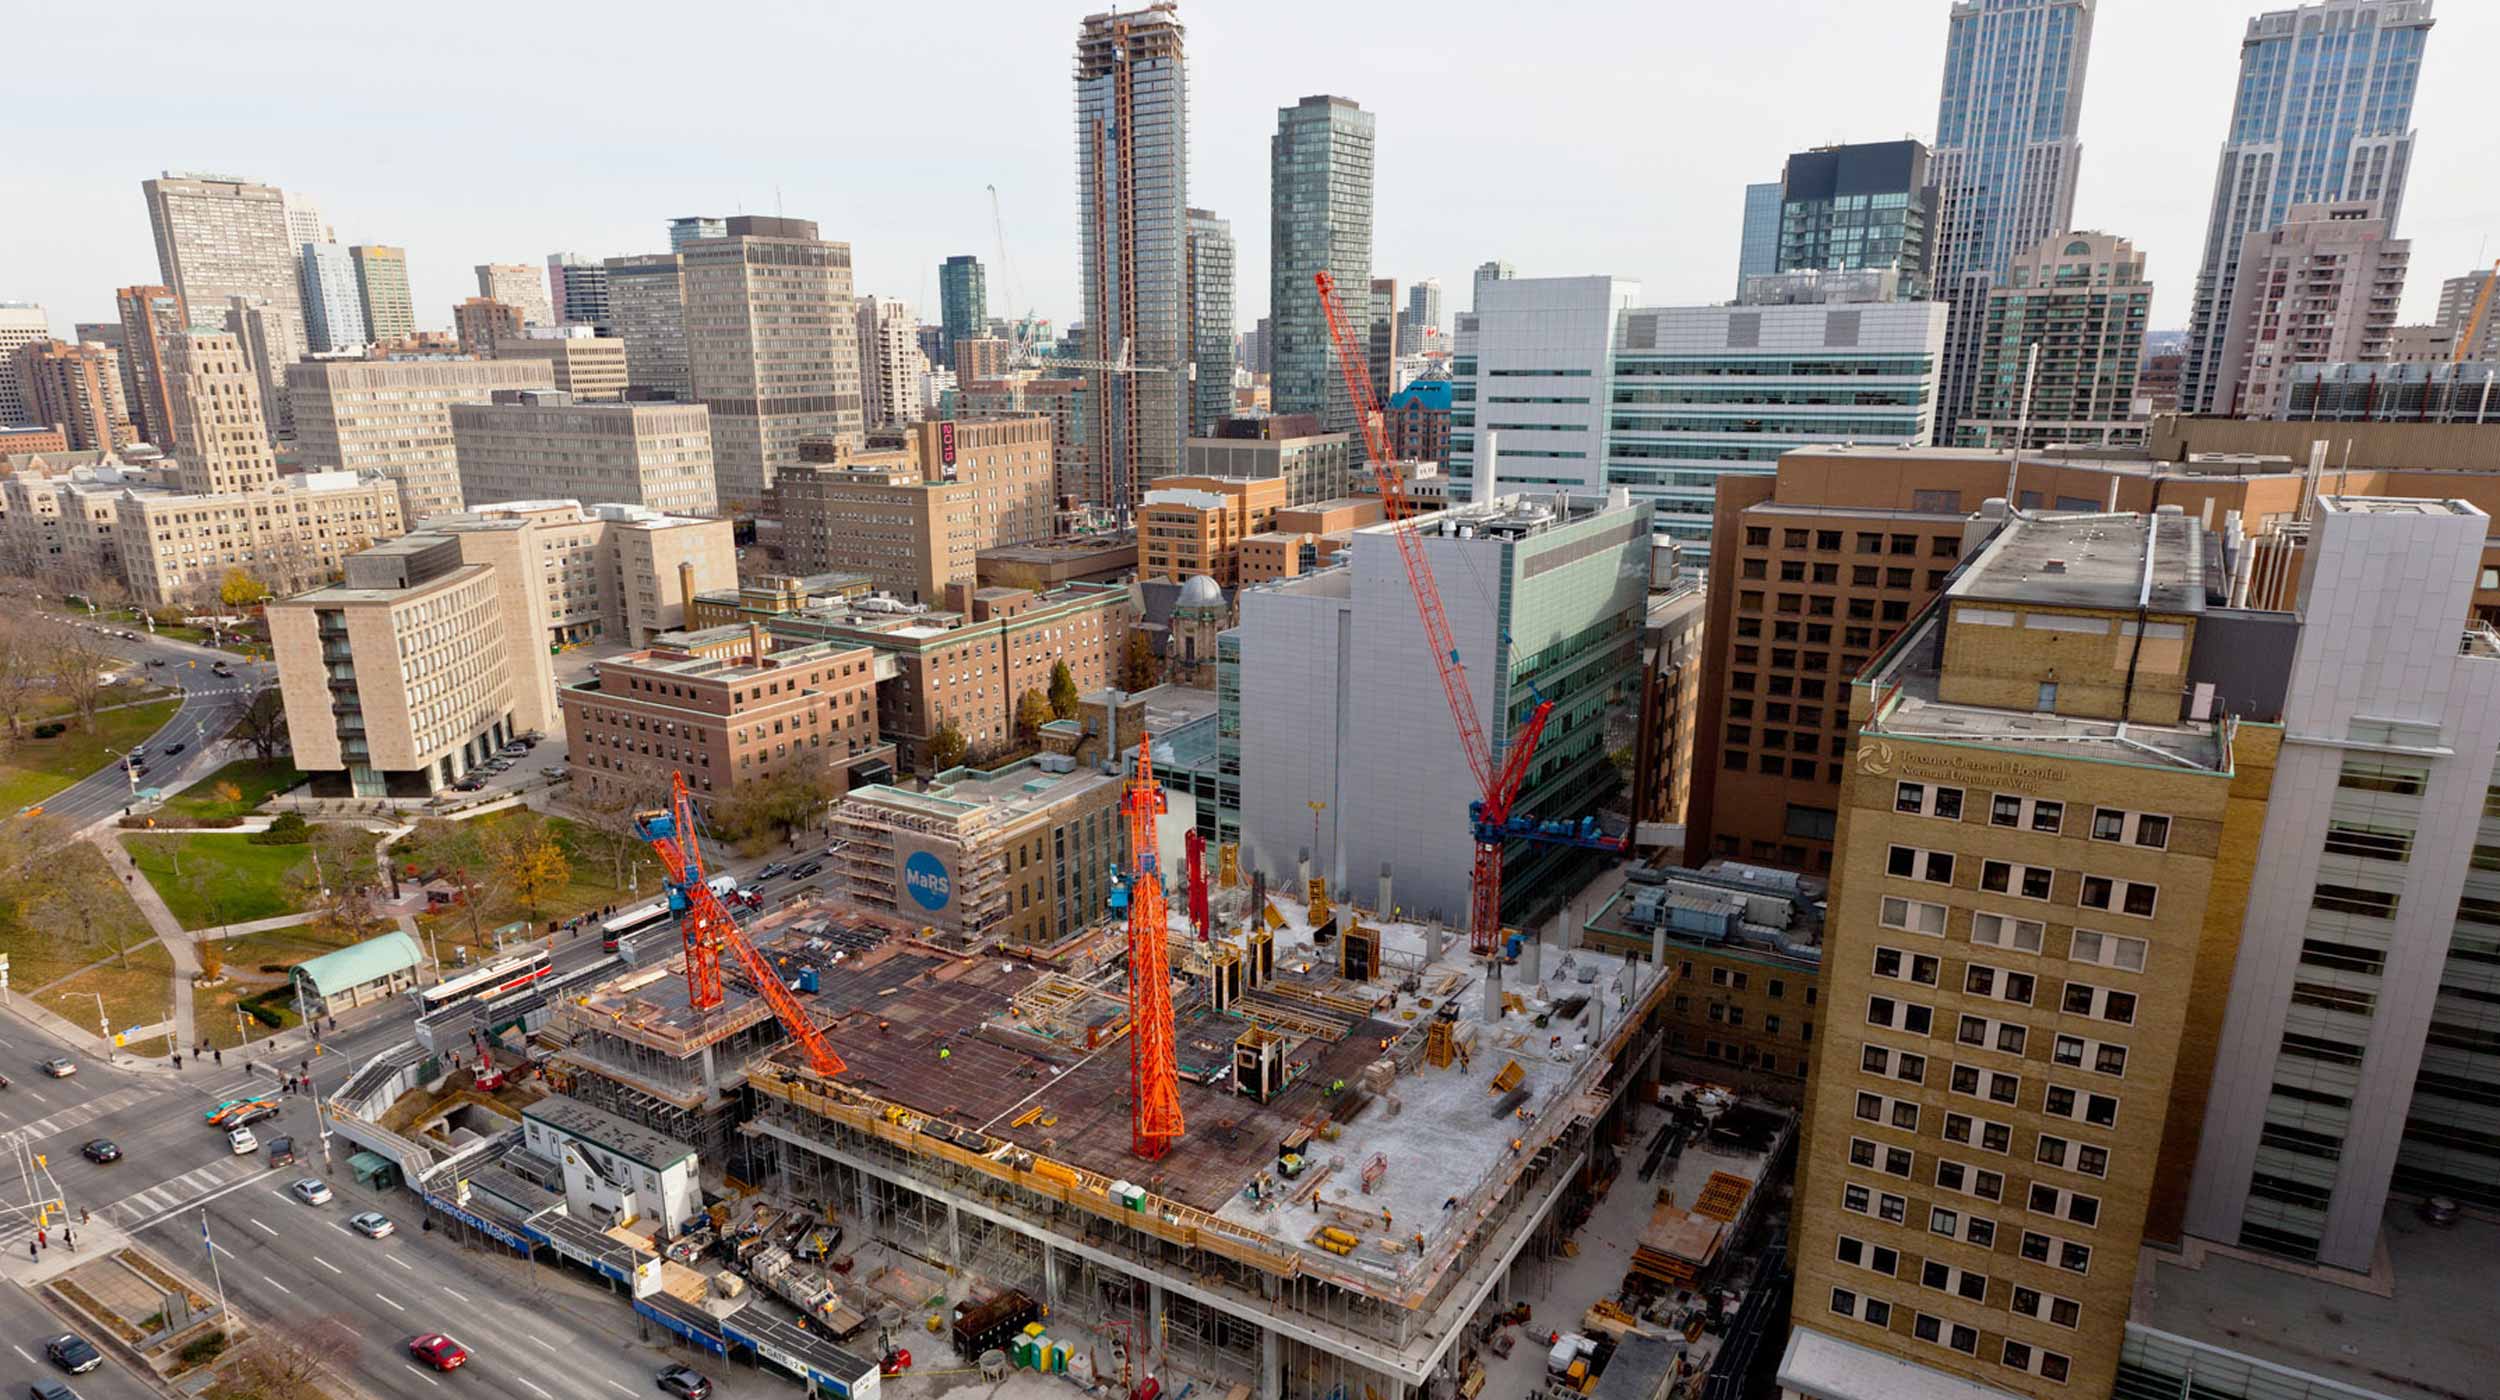 Localizado no distrito Discovery de Toronto, a Fase II do Centro MaRs adicionará 74.000 m² ao complexo já existente.